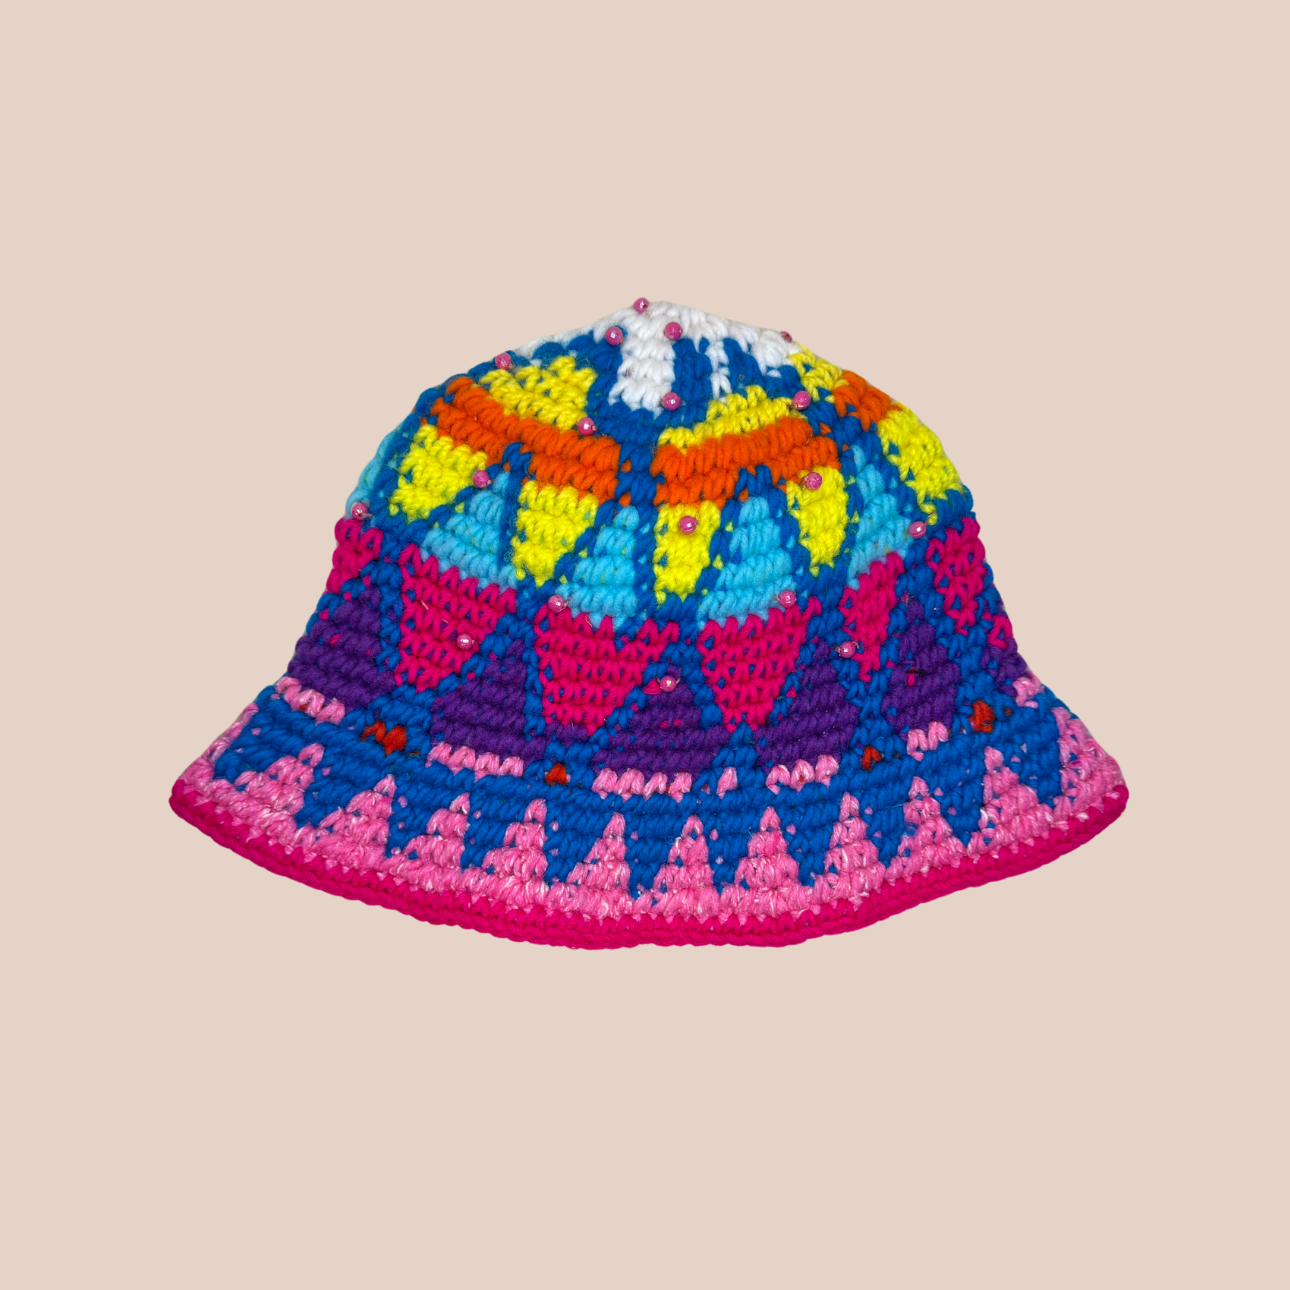 Image du bucket hat de Maison Badigo, bucket hat (bob) en laine crocheté détail perles multicolore et tendance